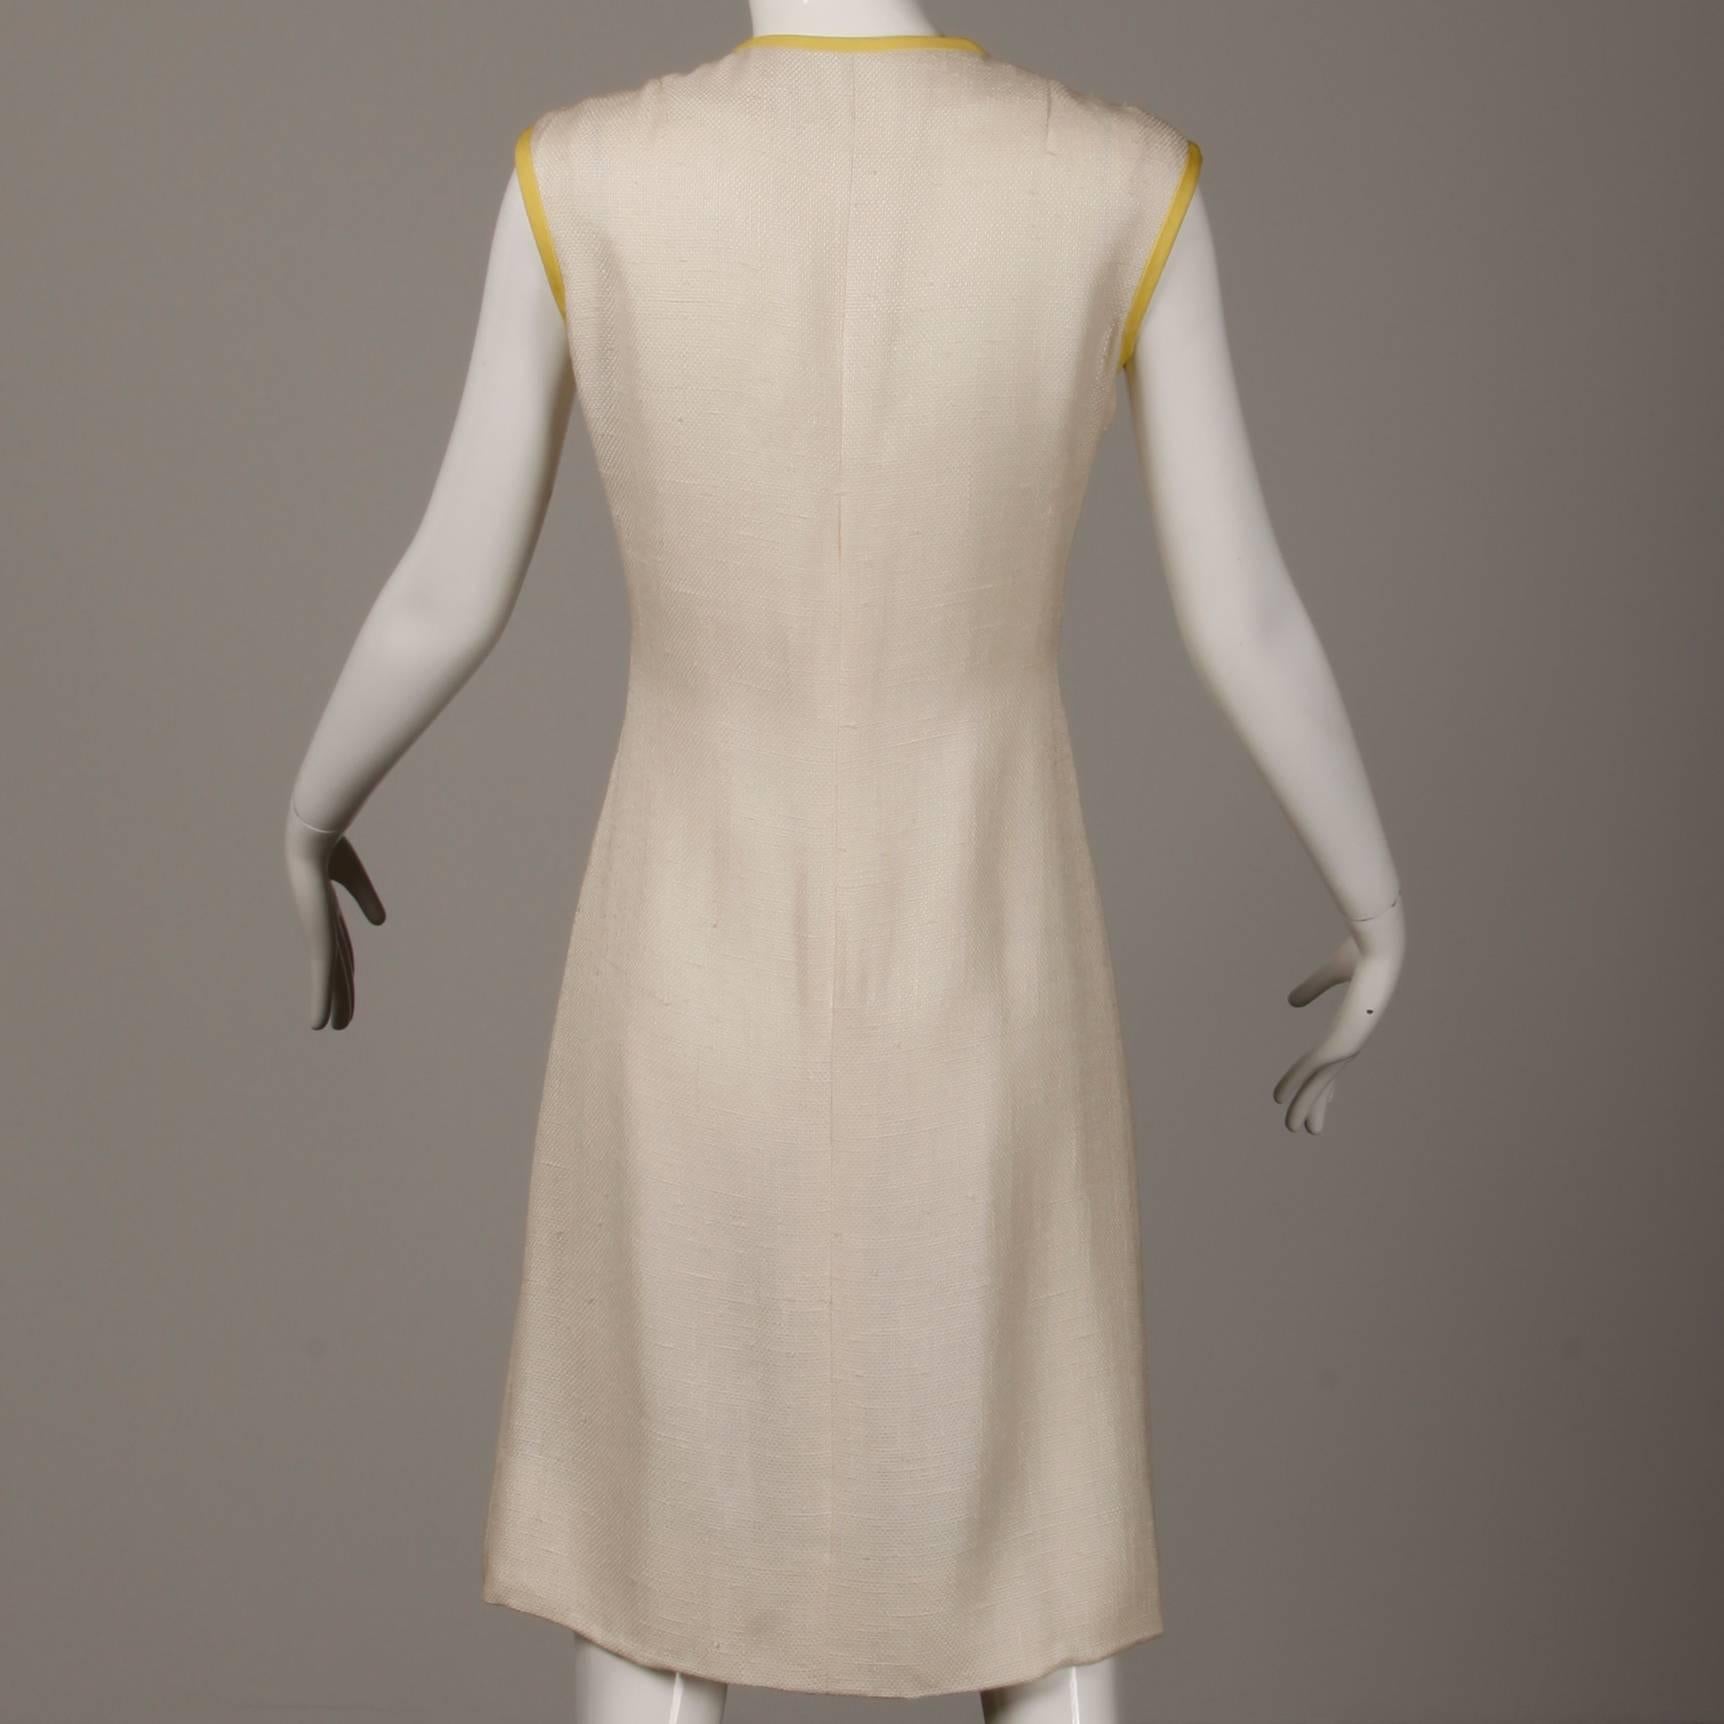 1960s Harvey Berin by Karen Stark Vintage Yellow + White Linen Sheath Dress 2